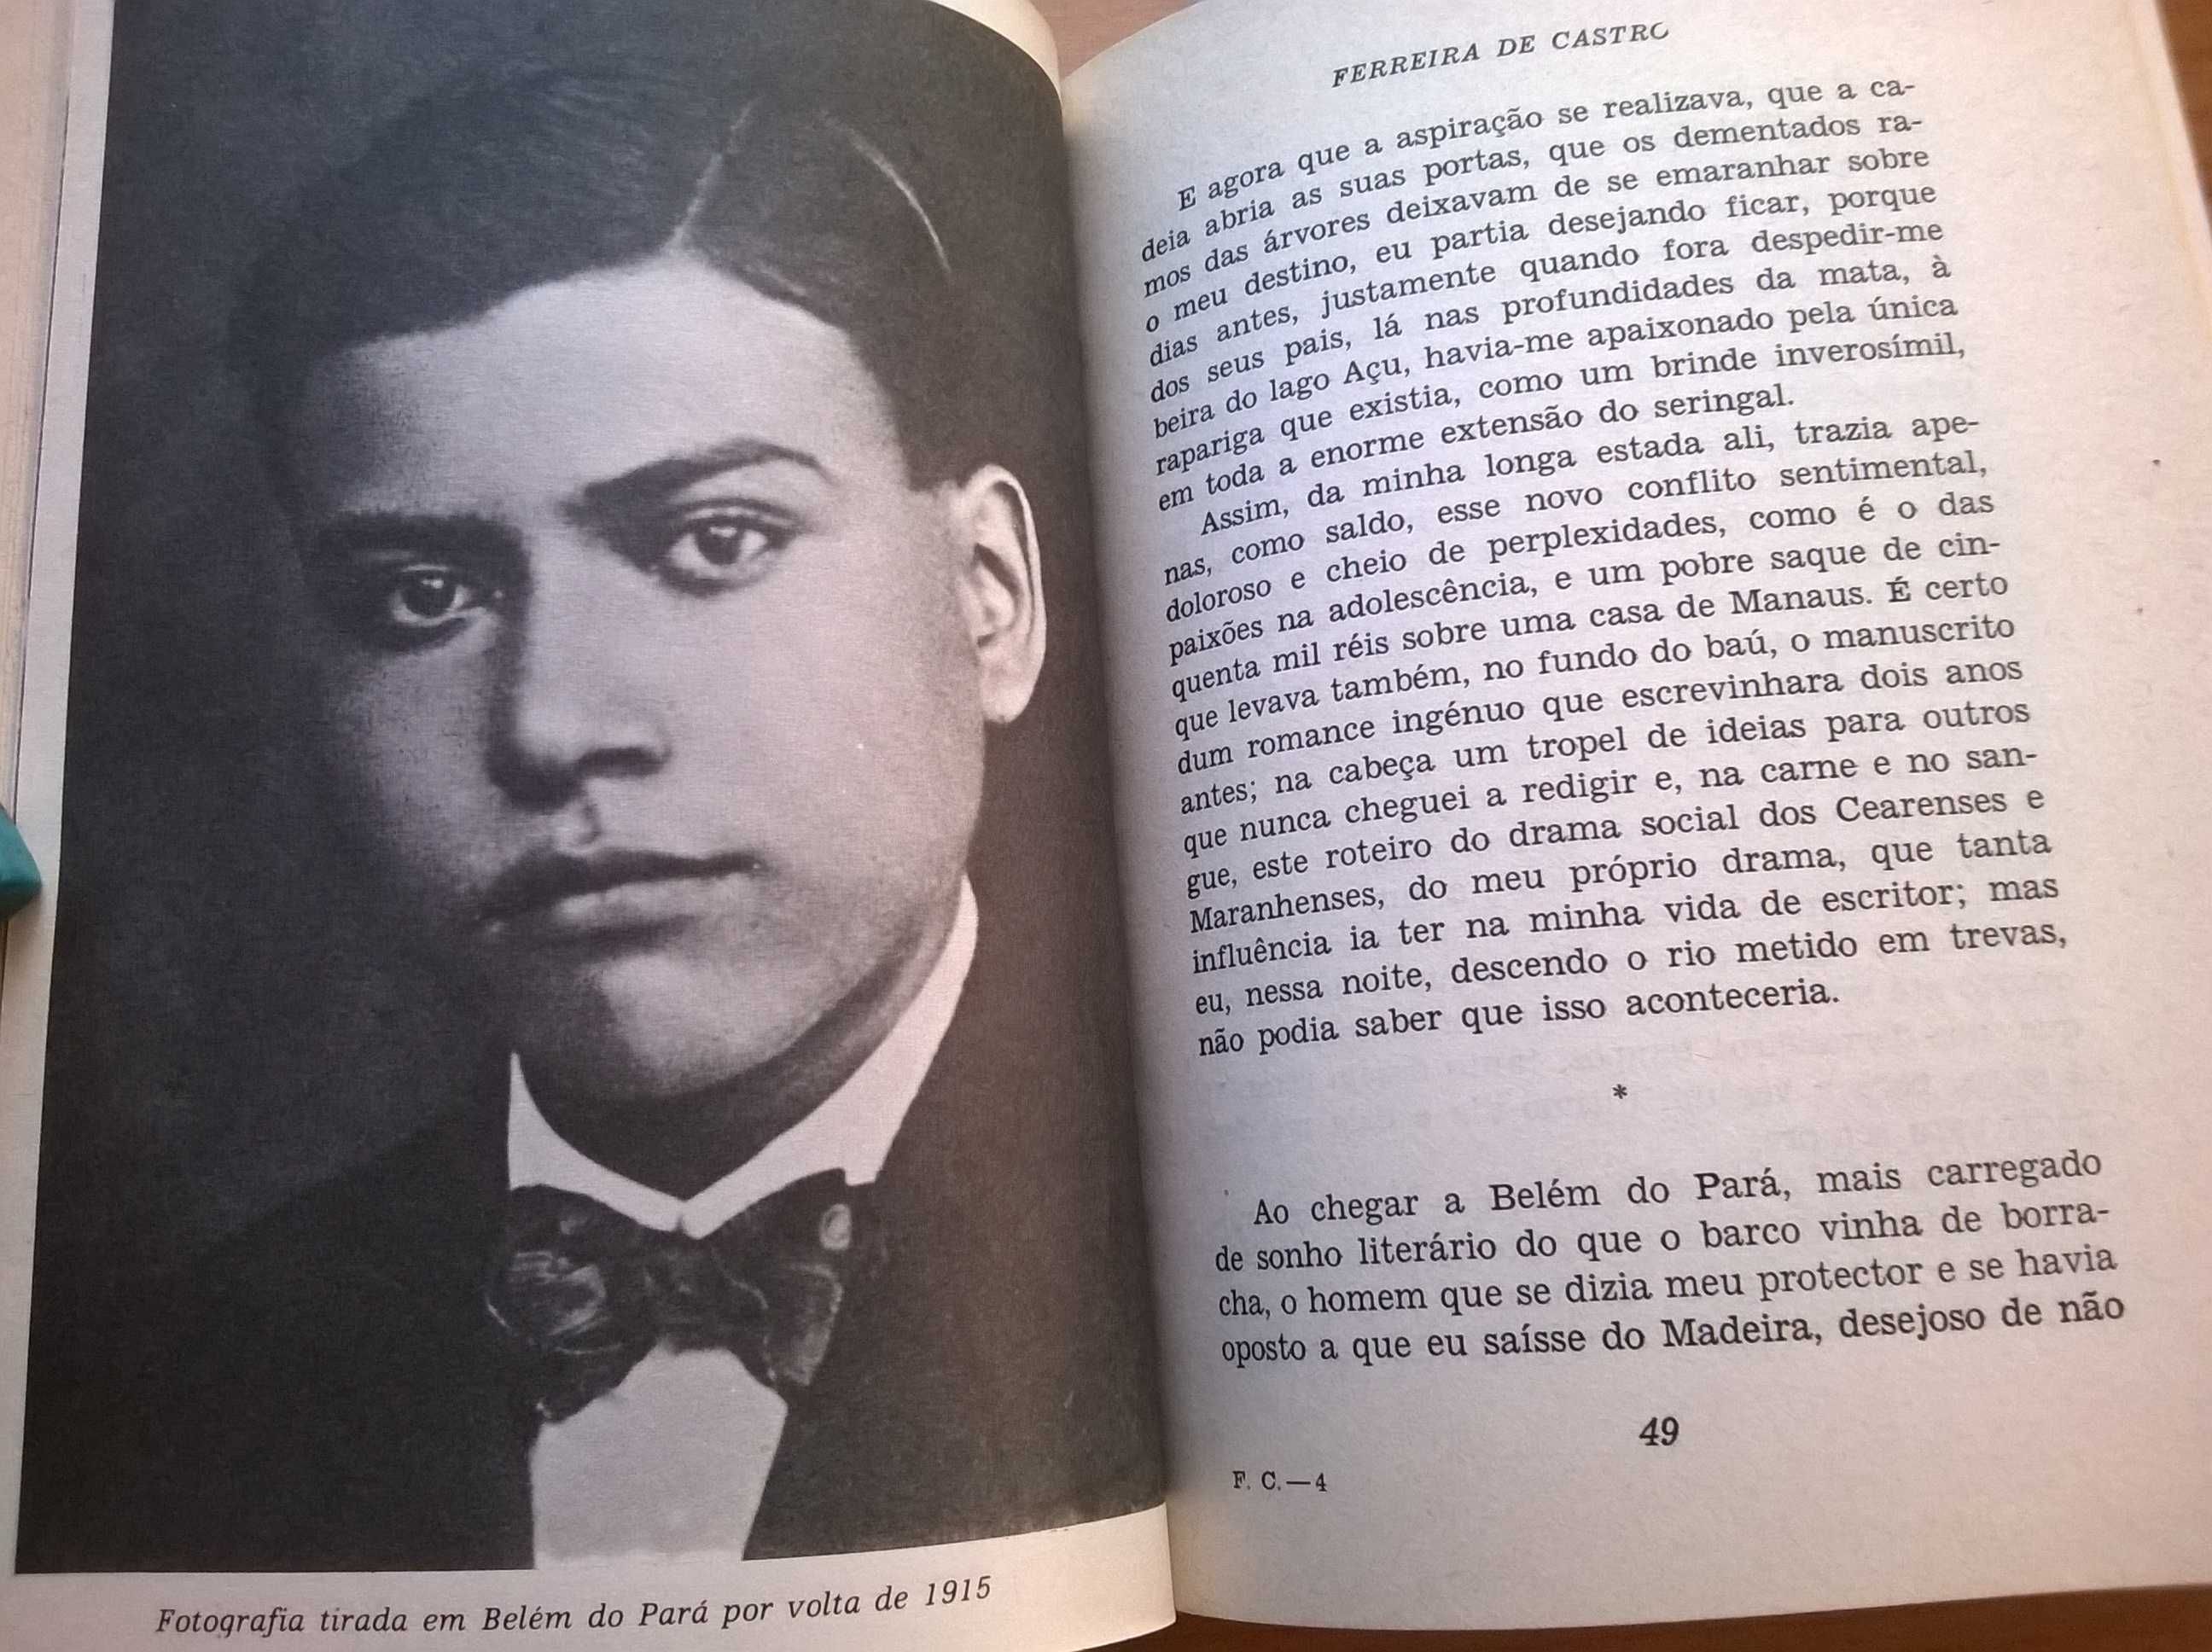 Ferreira de Castro, a sua vida, personalidade e obra - Álvaro Salema